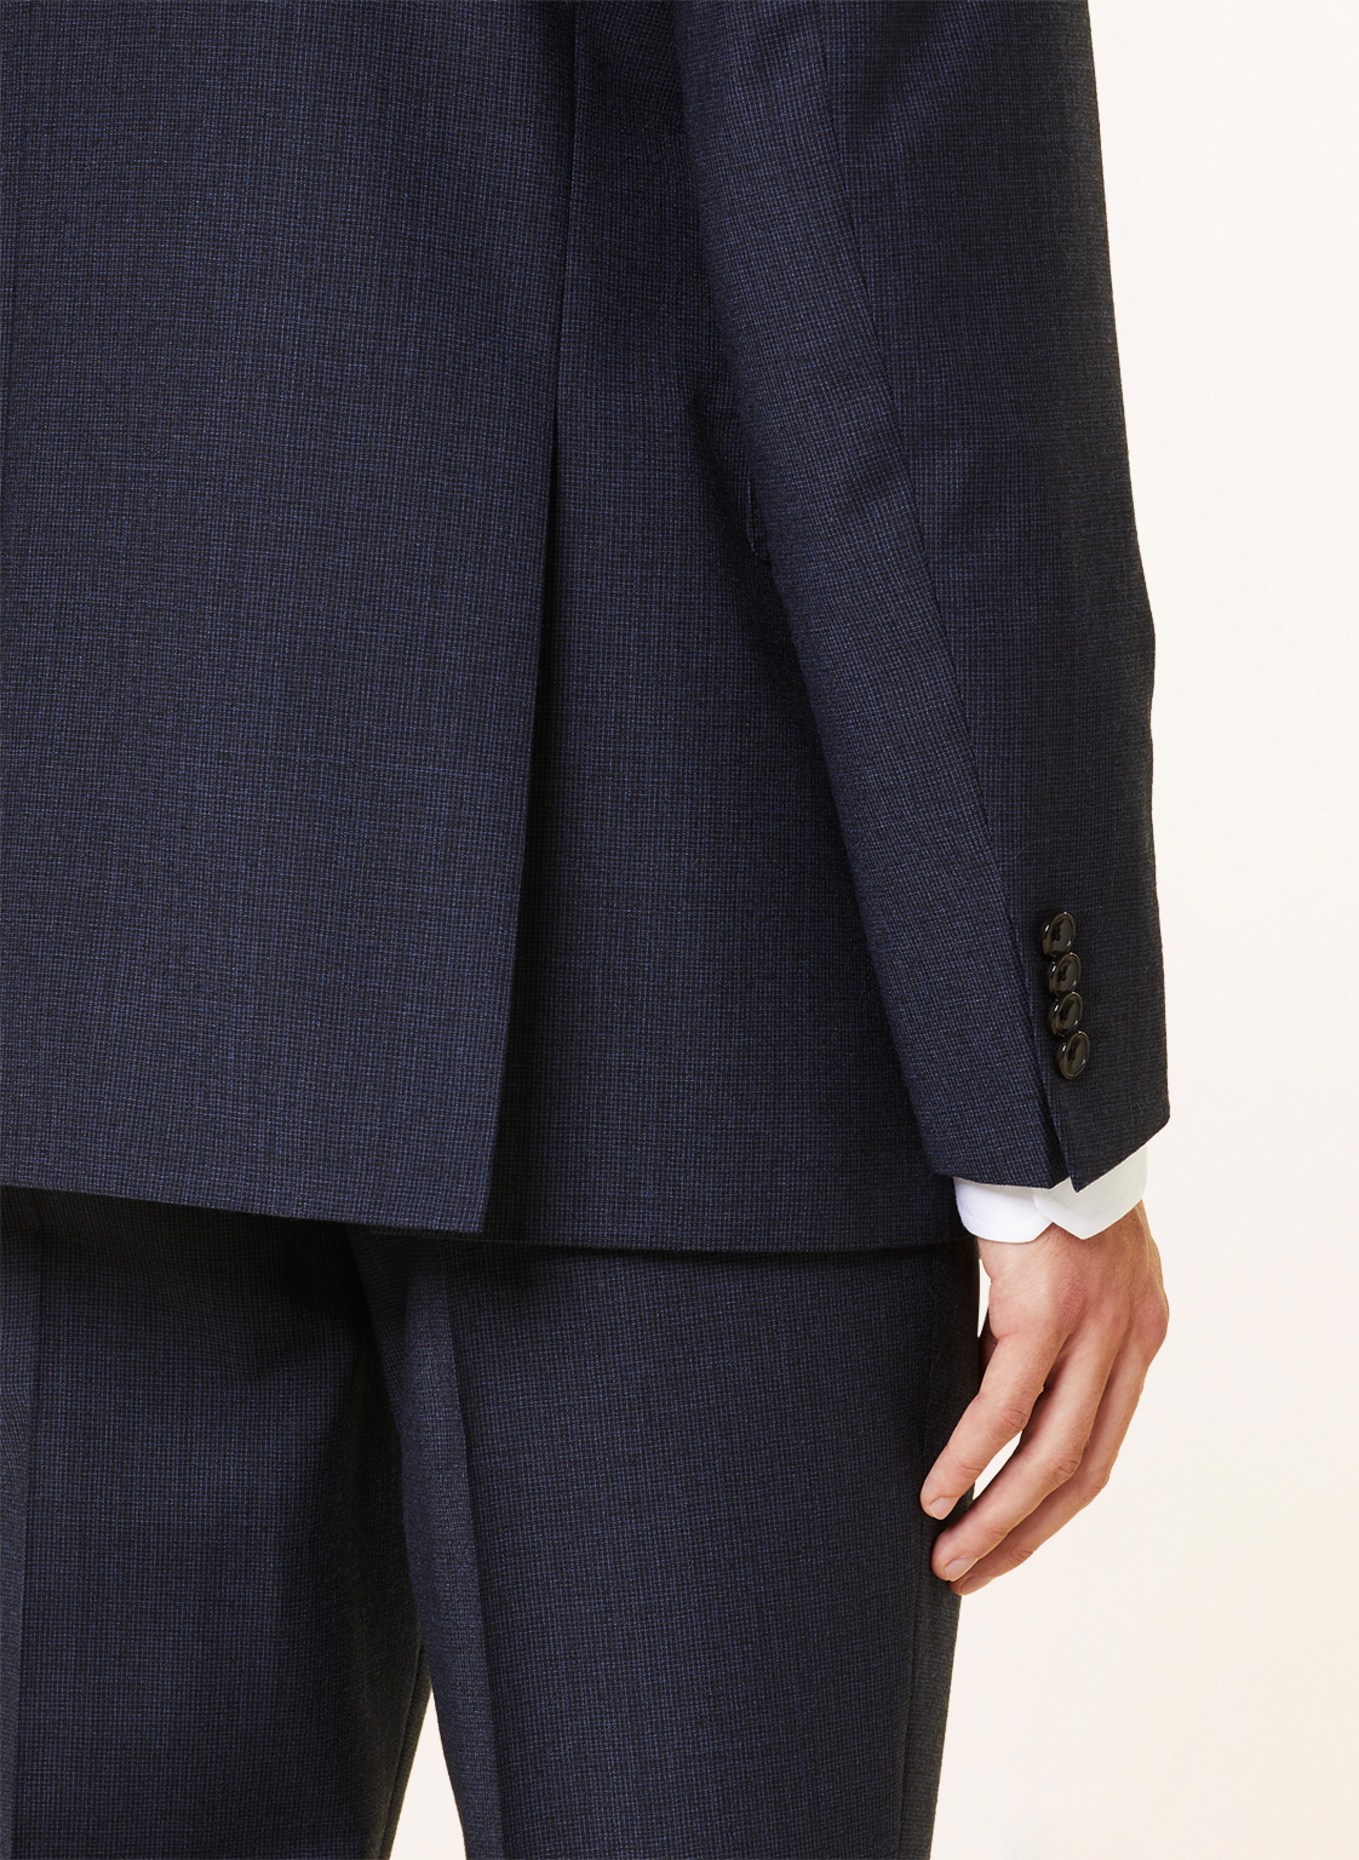 EDUARD DRESSLER Suit jacket comfort fit, Color: 047 DUNKELBLAU (Image 6)